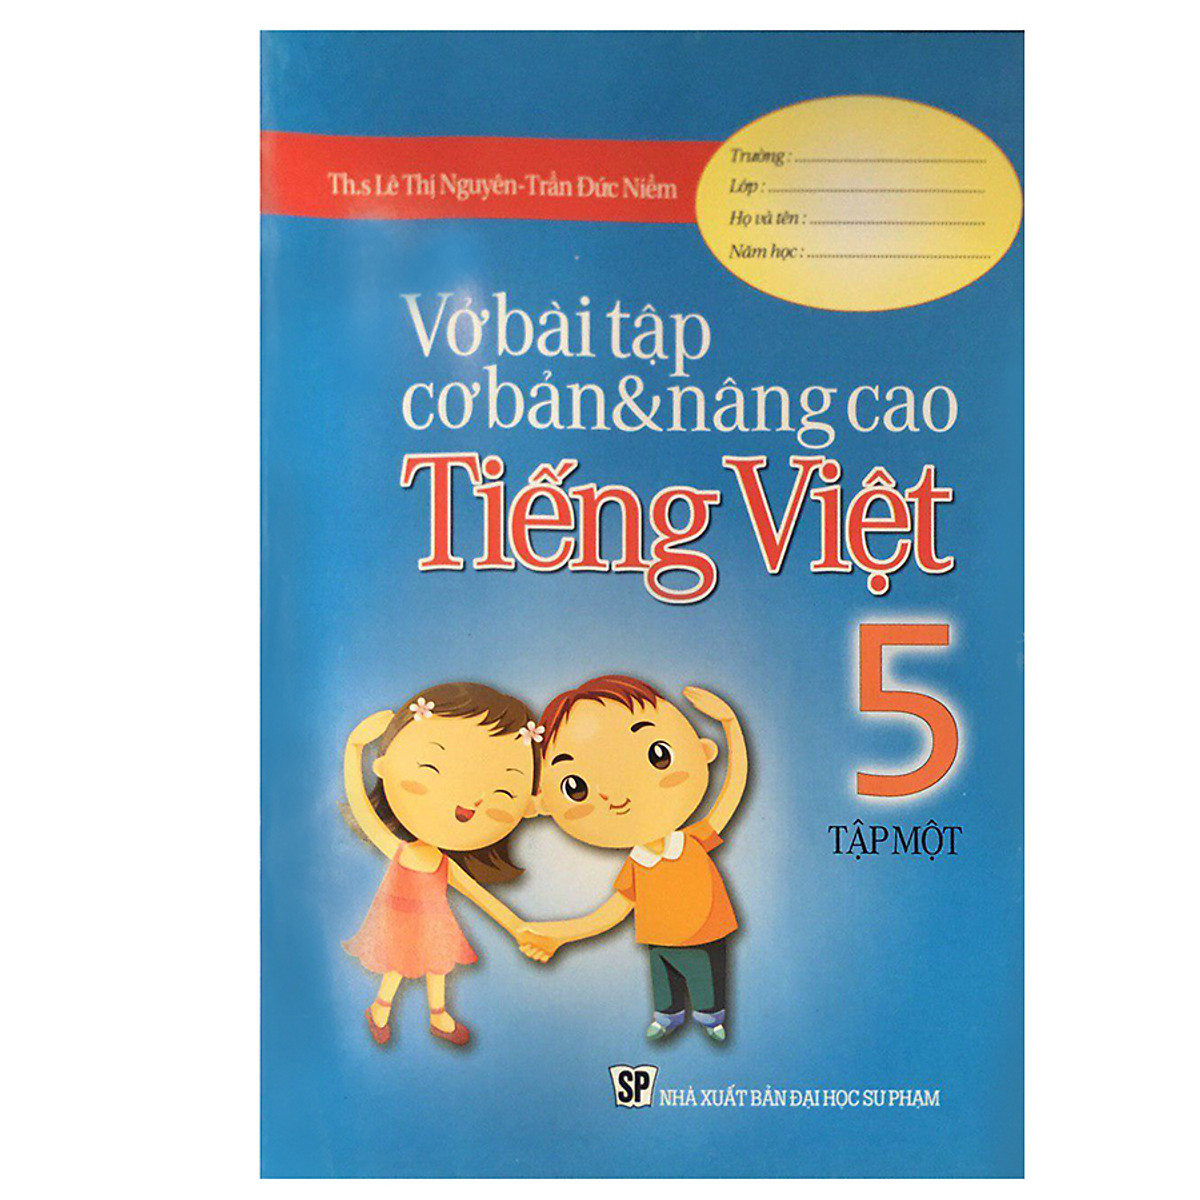 Vở Bài Tập Tiếng Việt Cơ Bản Và Nâng Cao Lớp 5 (Tập 1)